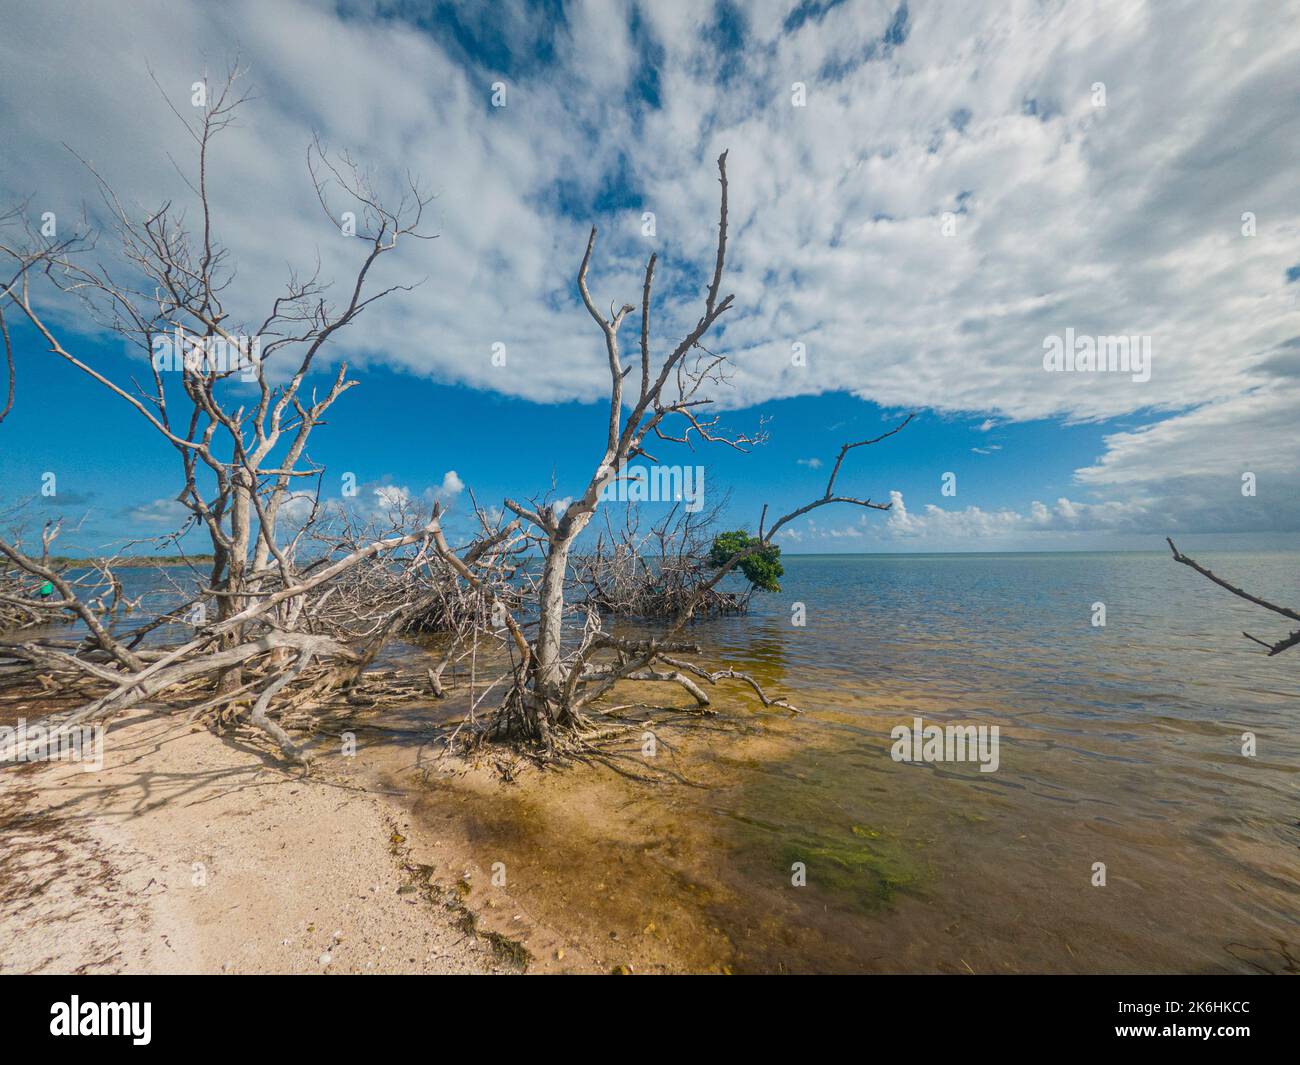 Dead mangrove trees, Key Largo, Florida Keys, USA Stock Photo